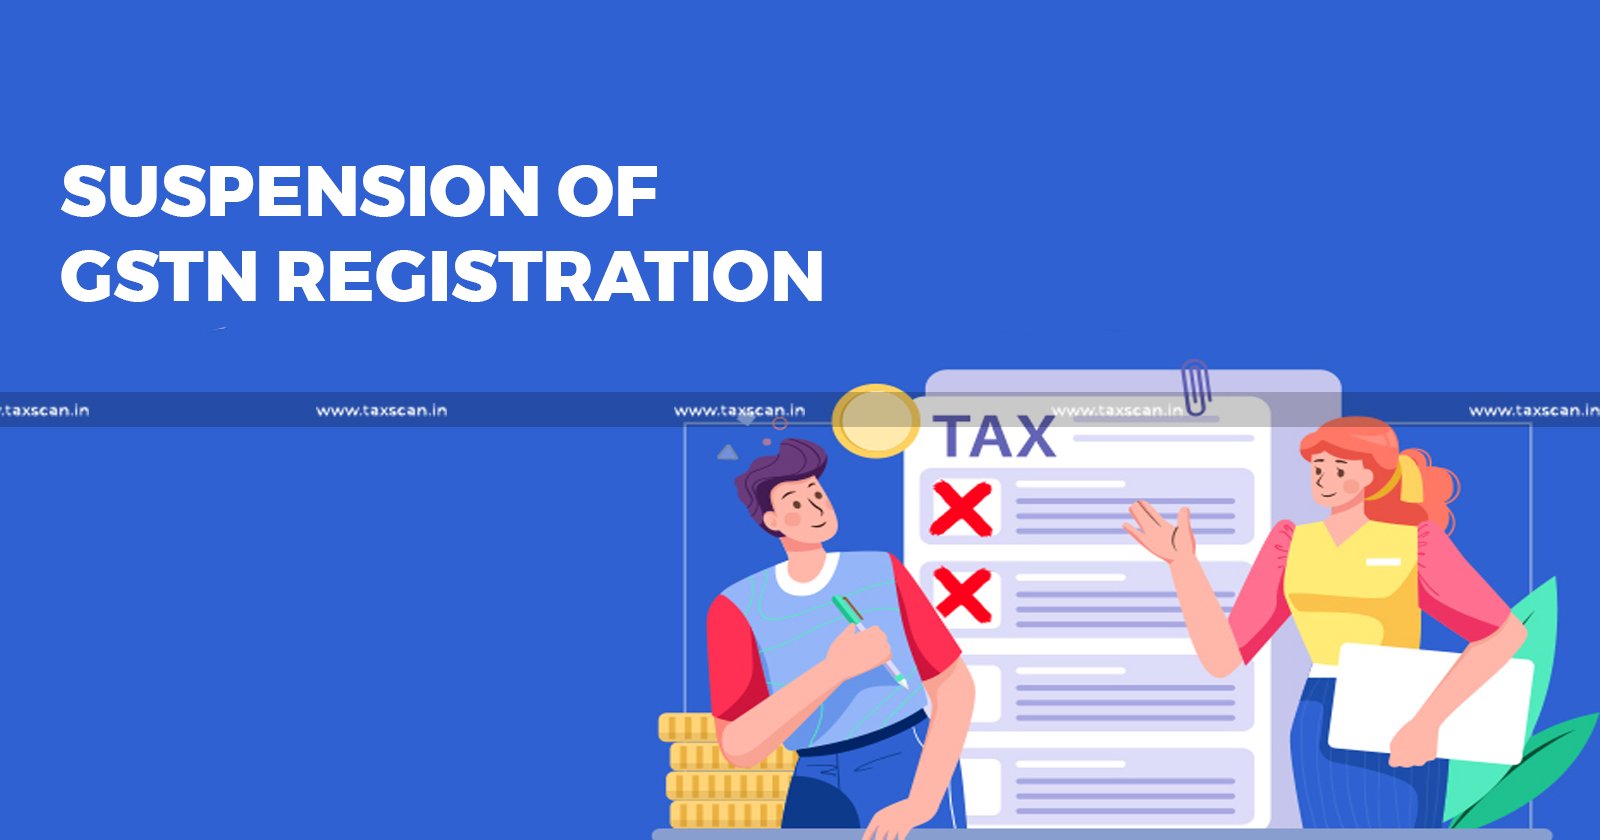 Incorrect Reflection - Suspension of GSTN Registration - GSTN Registration - GSTN - GSTN Registration on Portal - Technical Error - Delhi High Court - Refund - Suspension of GSTN Registration on Portal - GST portal - GST - taxscan